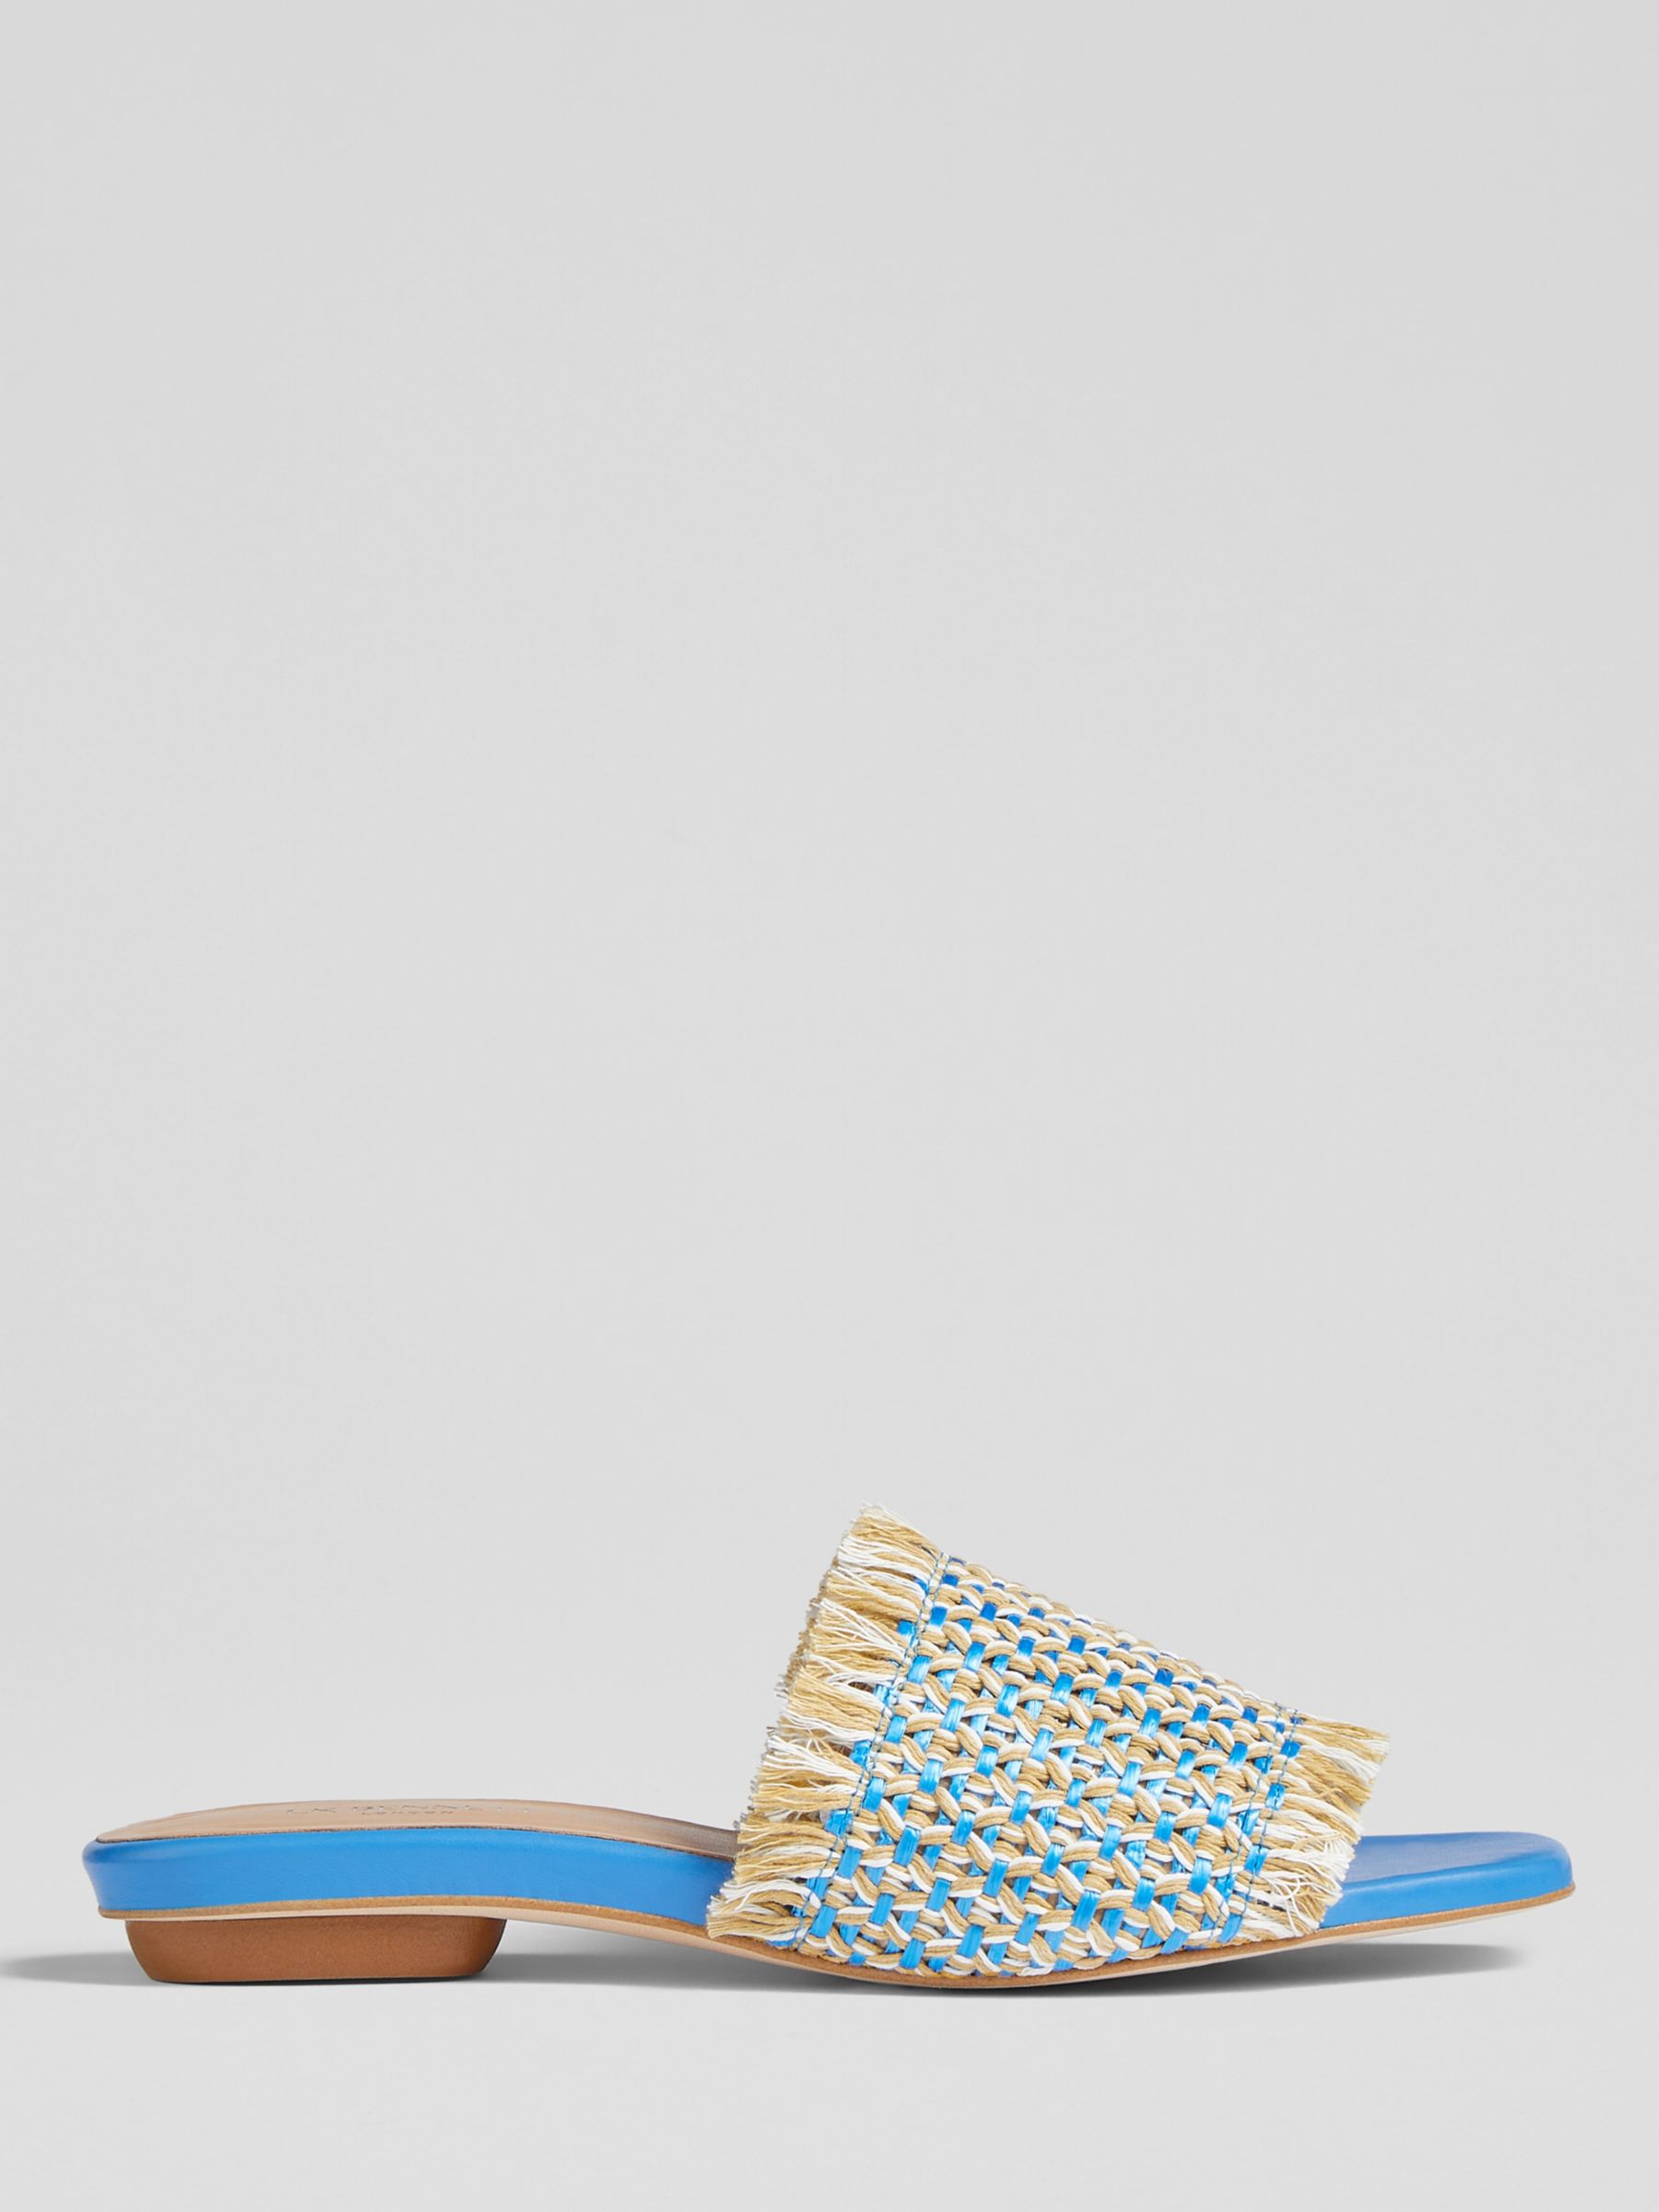 L.K.Bennett Meera Raffia Flat Sandals, Blue/Cream, 2